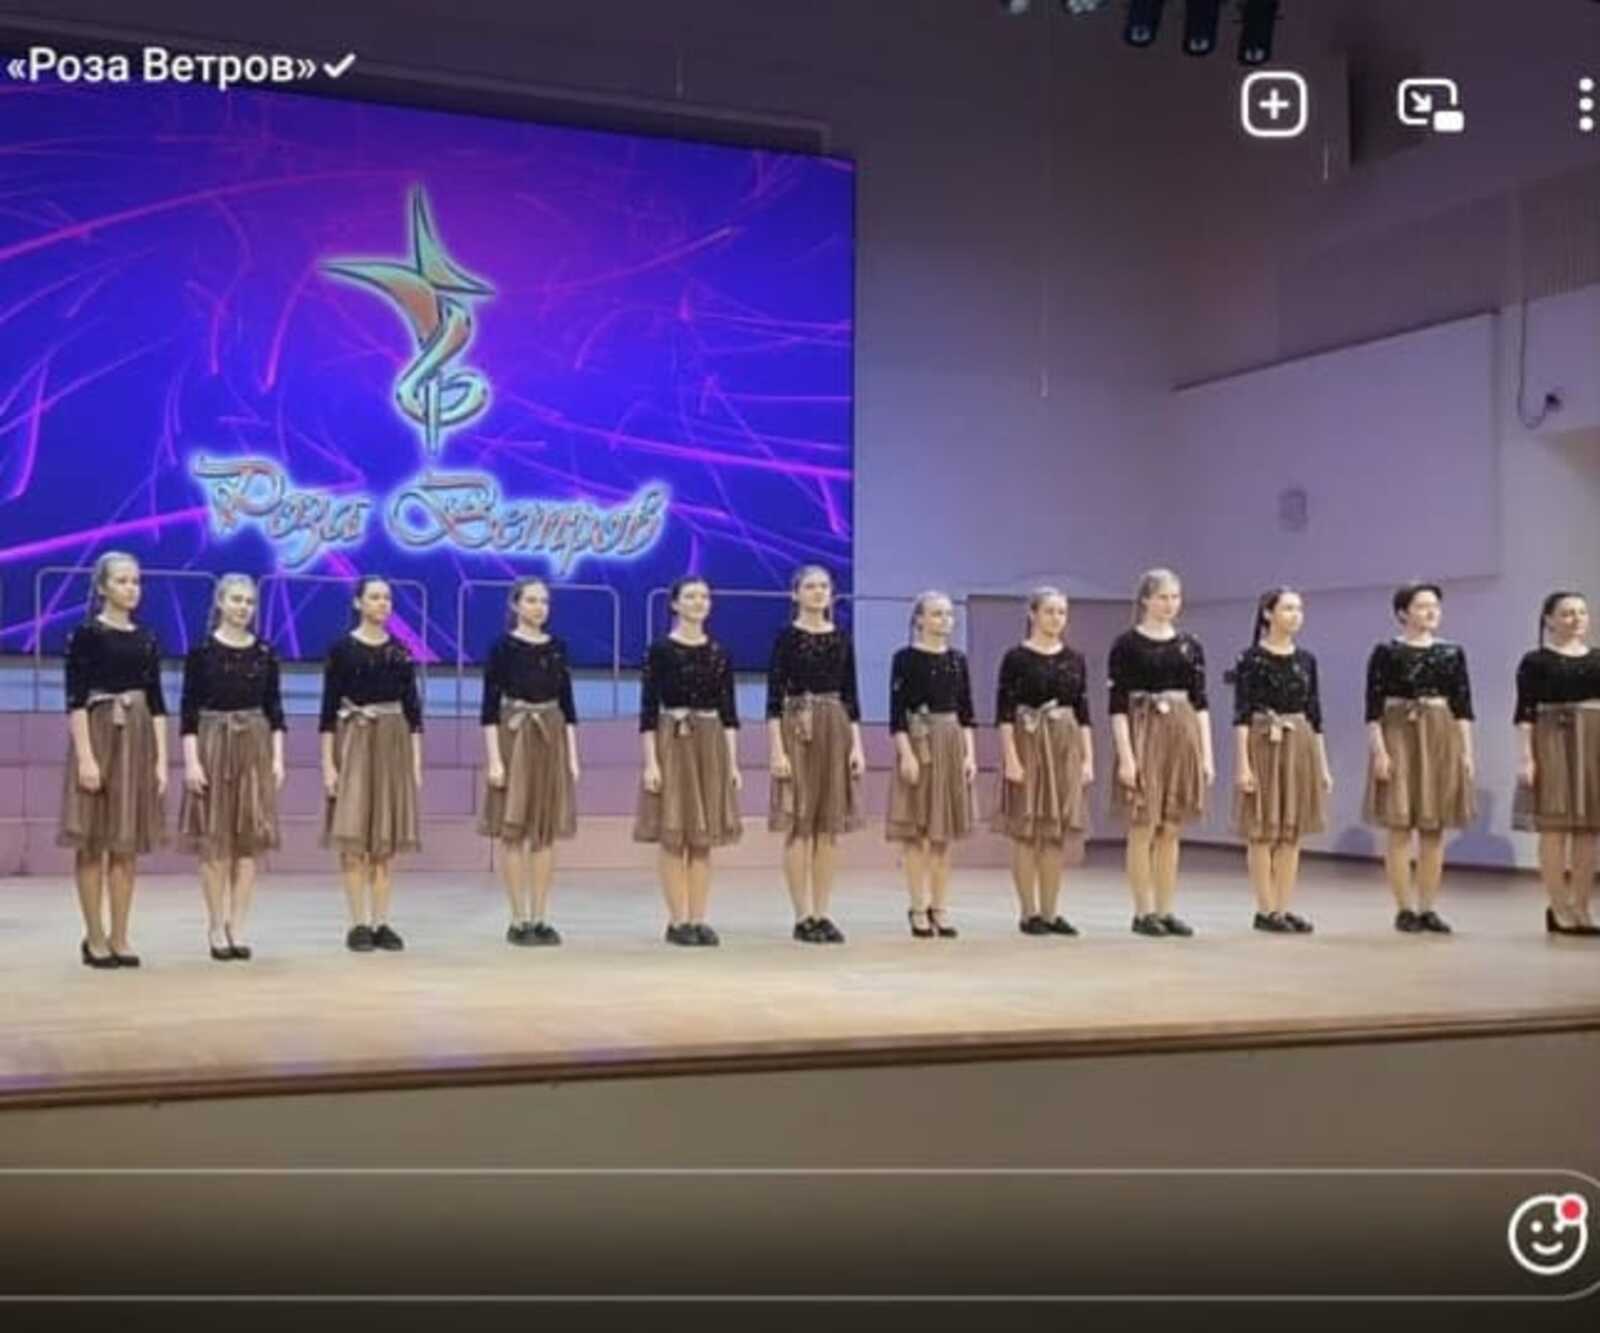 Детская музыкальная  школа  из Башкирии (г. Стерлитамак) стала лауреатом всемирного финала